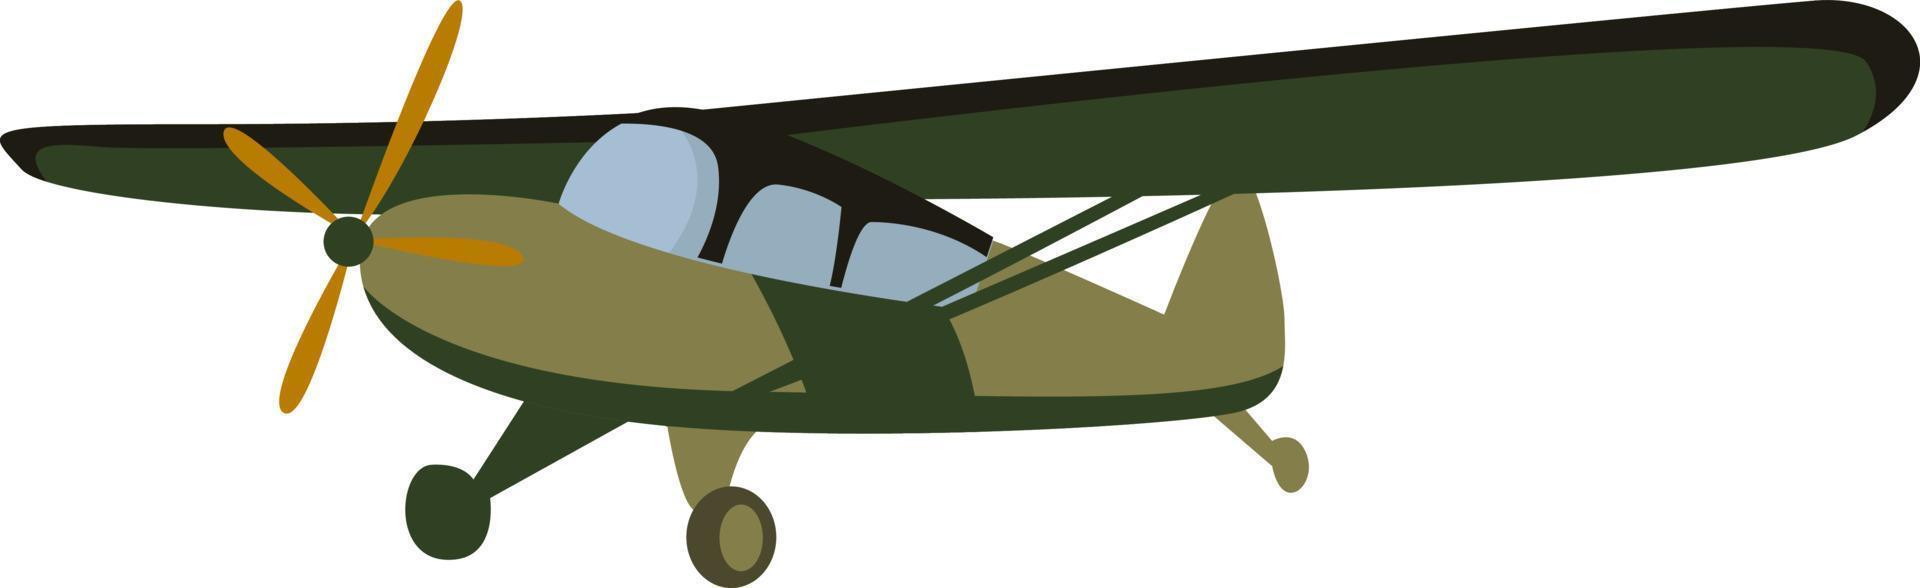 avión de enlace, ilustración, vector sobre fondo blanco